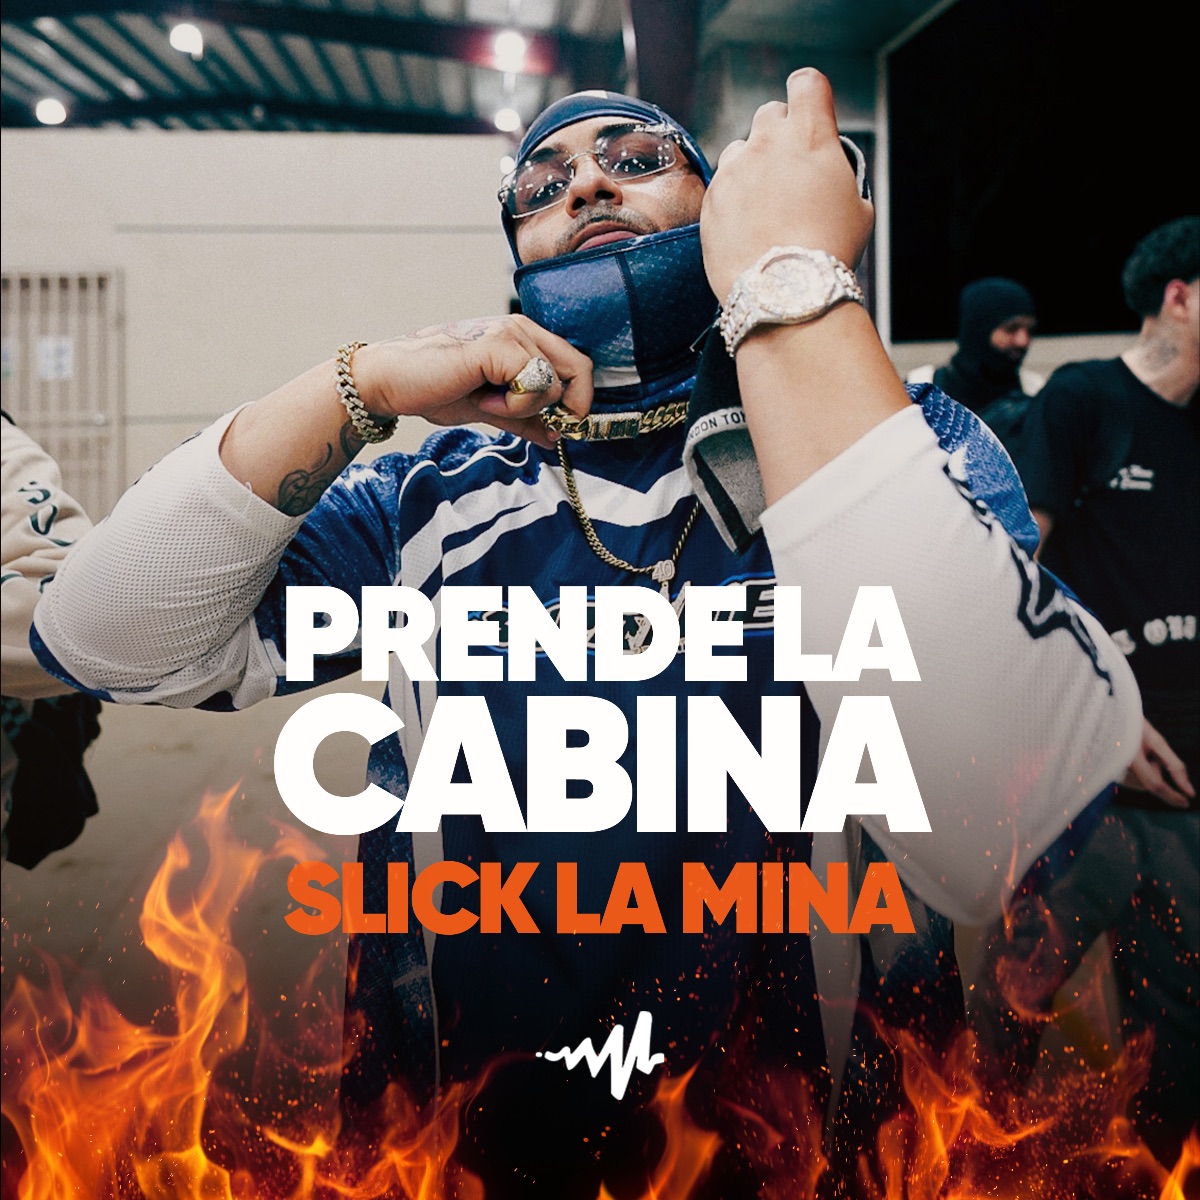 AUDIOMACK lanza episodio exclusivo de “Prende la Cabina” con Slick La Mina